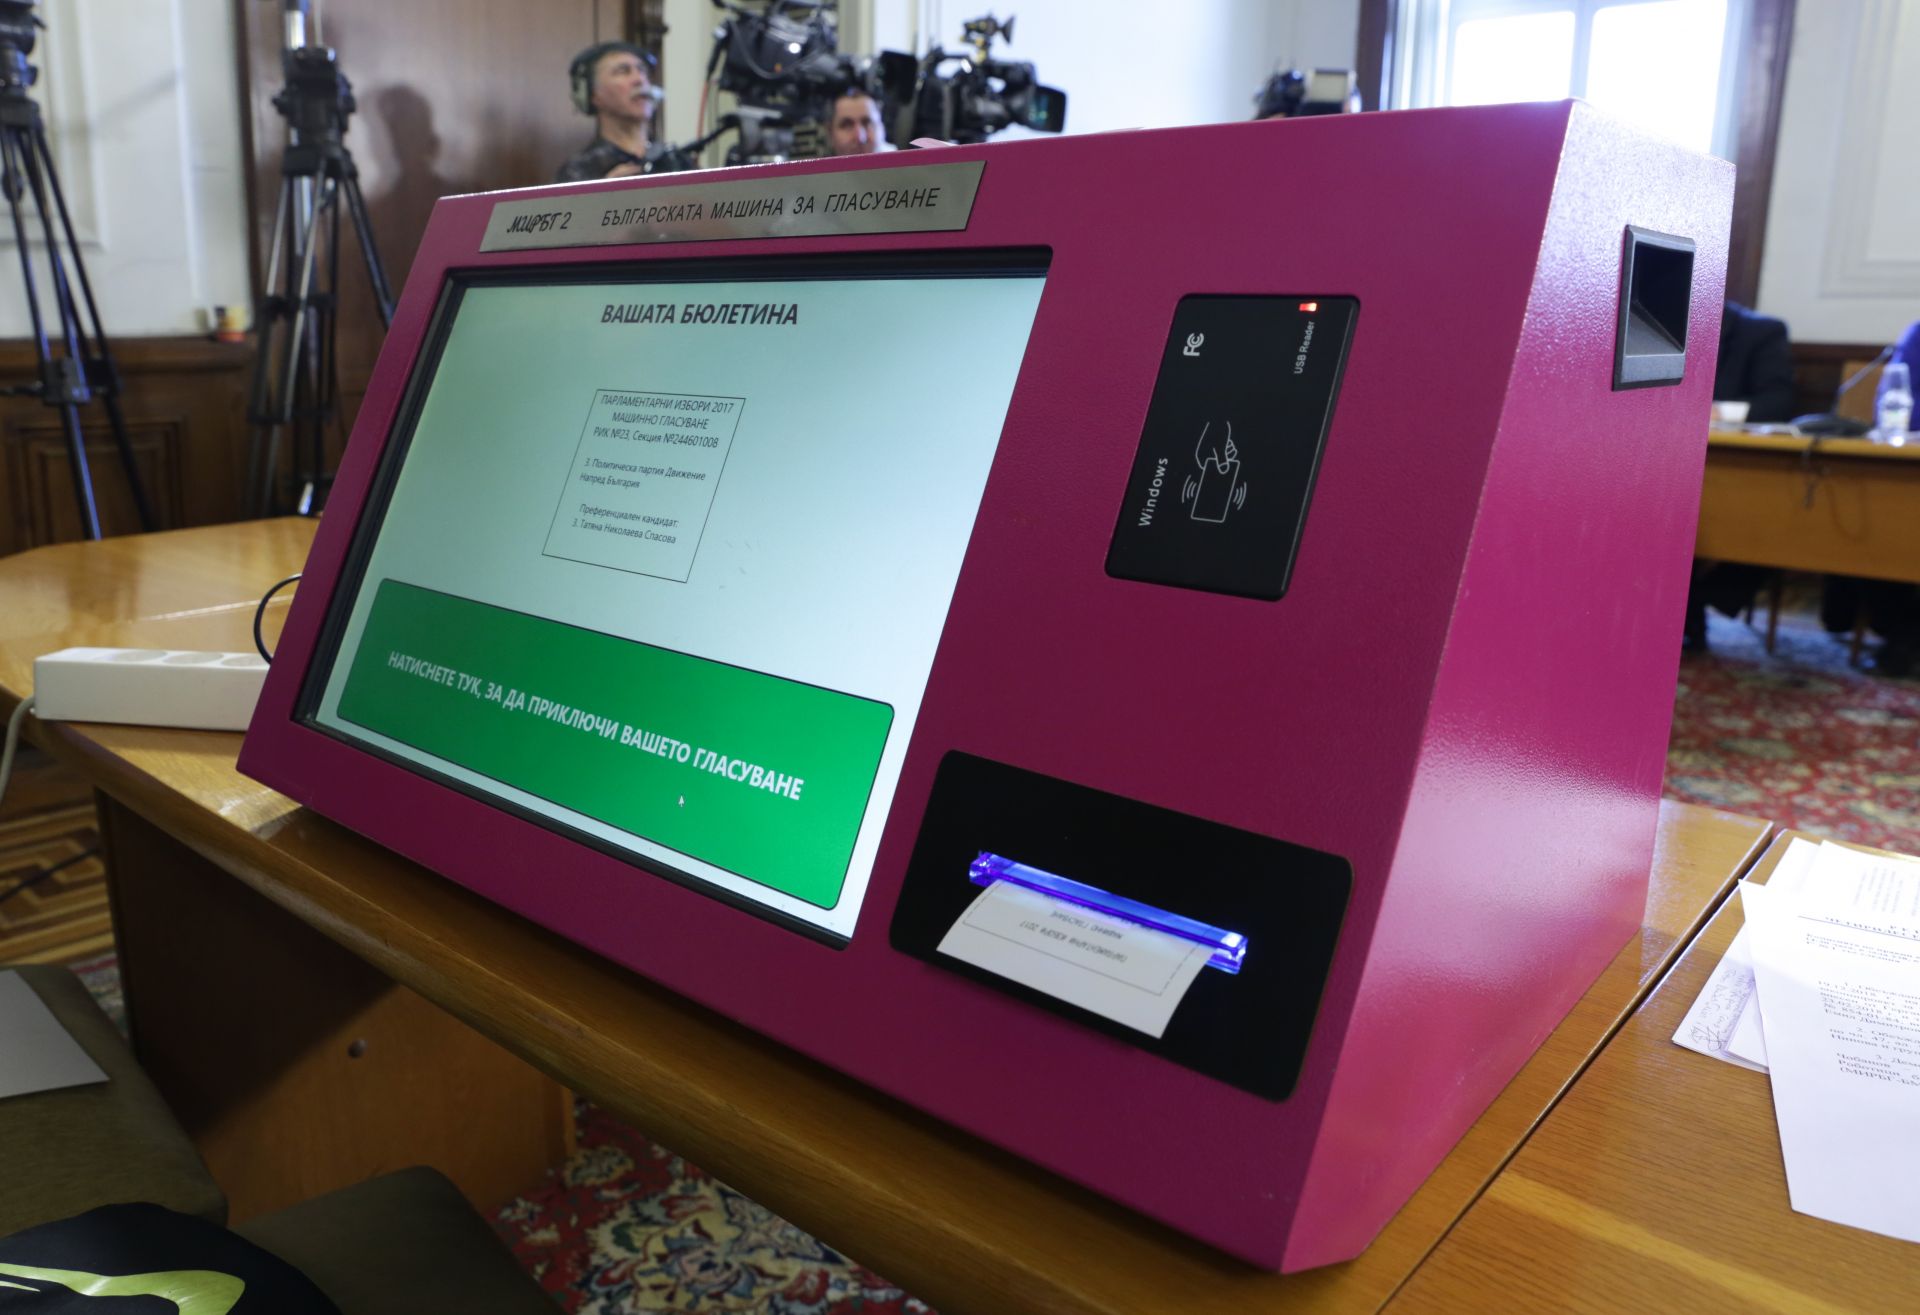 Българският изобретател инженер Александър Чобанов показа нова машина за гласуване пред членовете на правната парламентарна комисия